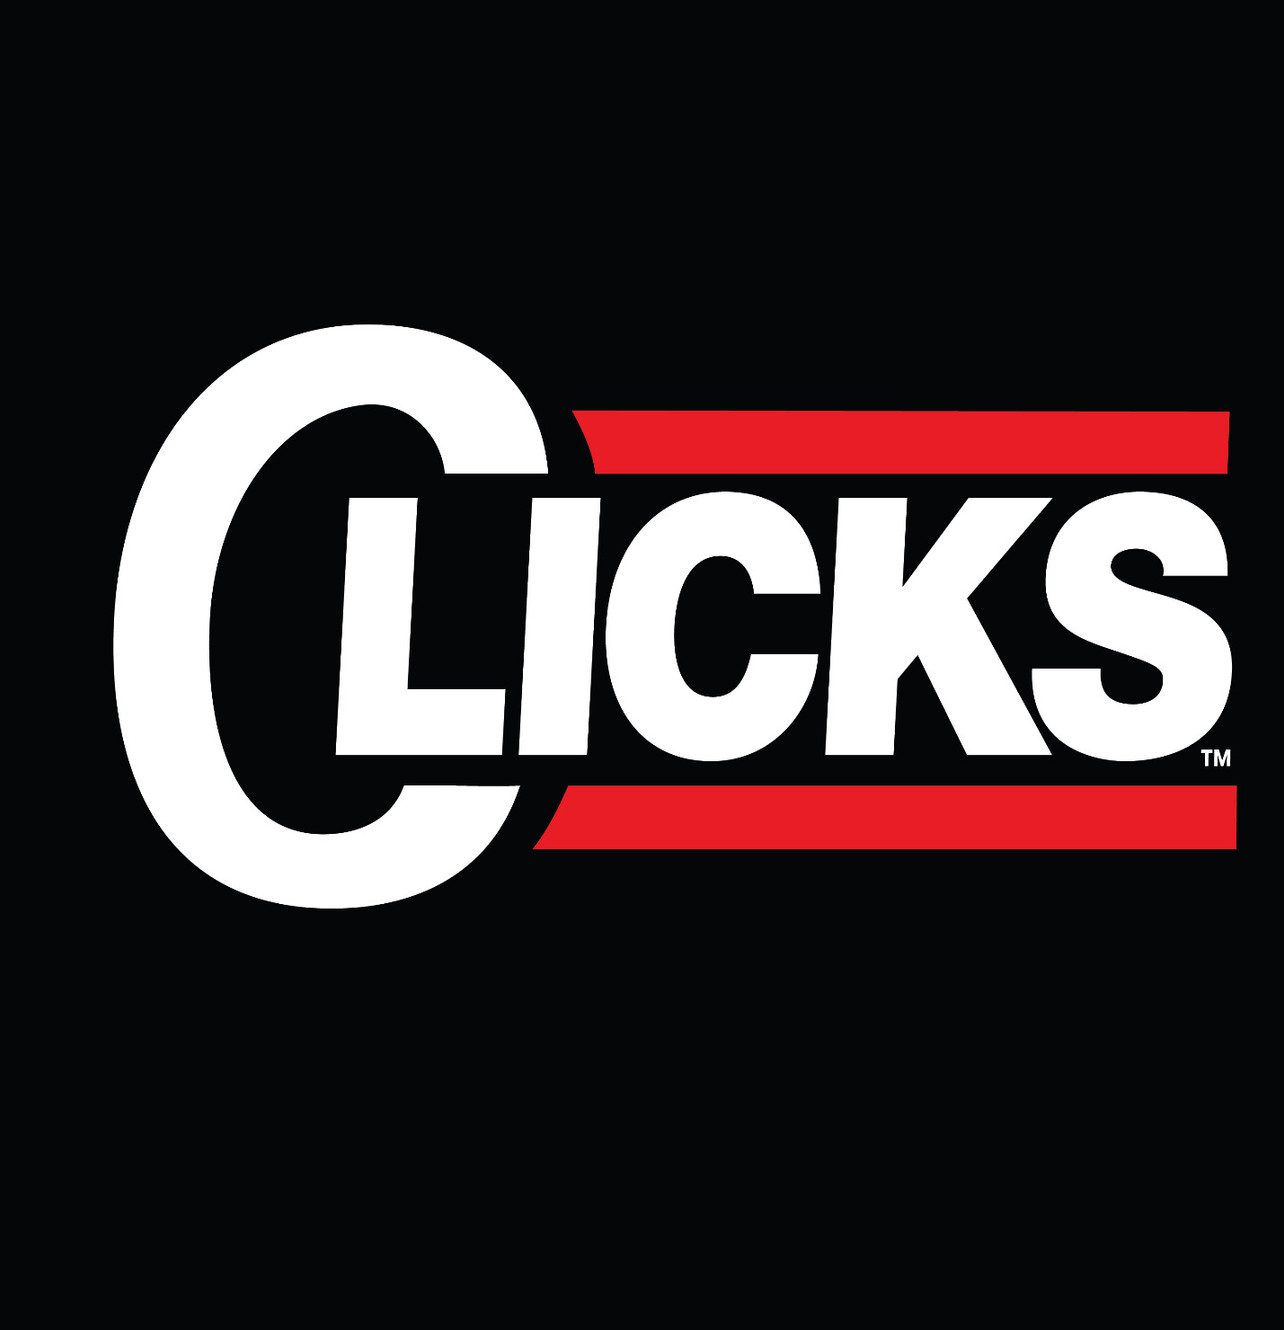 www.clickskicks.net